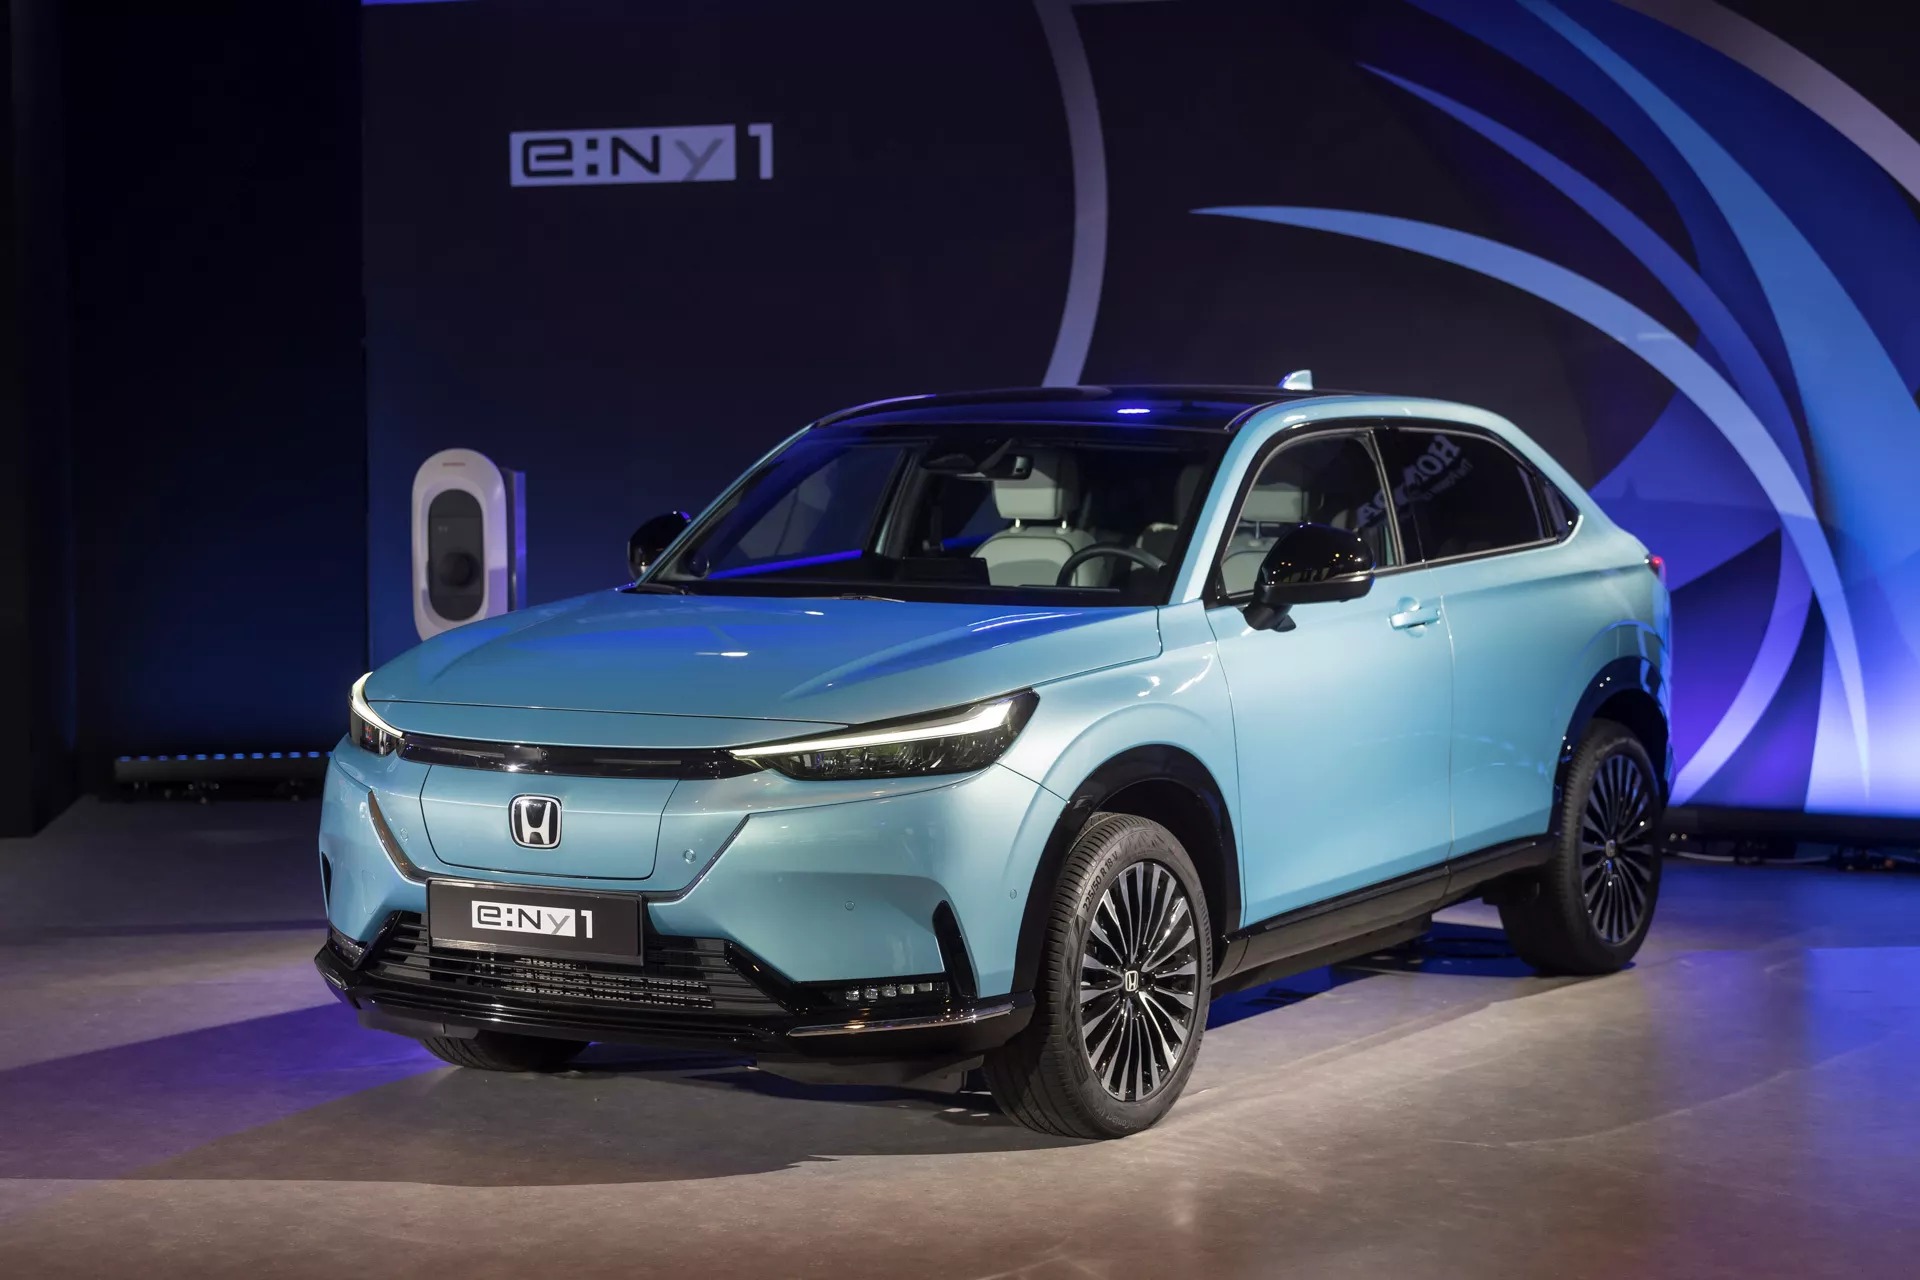 Honda e:Ny1 - SUV điện hoàn toàn mới của Honda với thiết kế như HR-V - Ảnh 2.